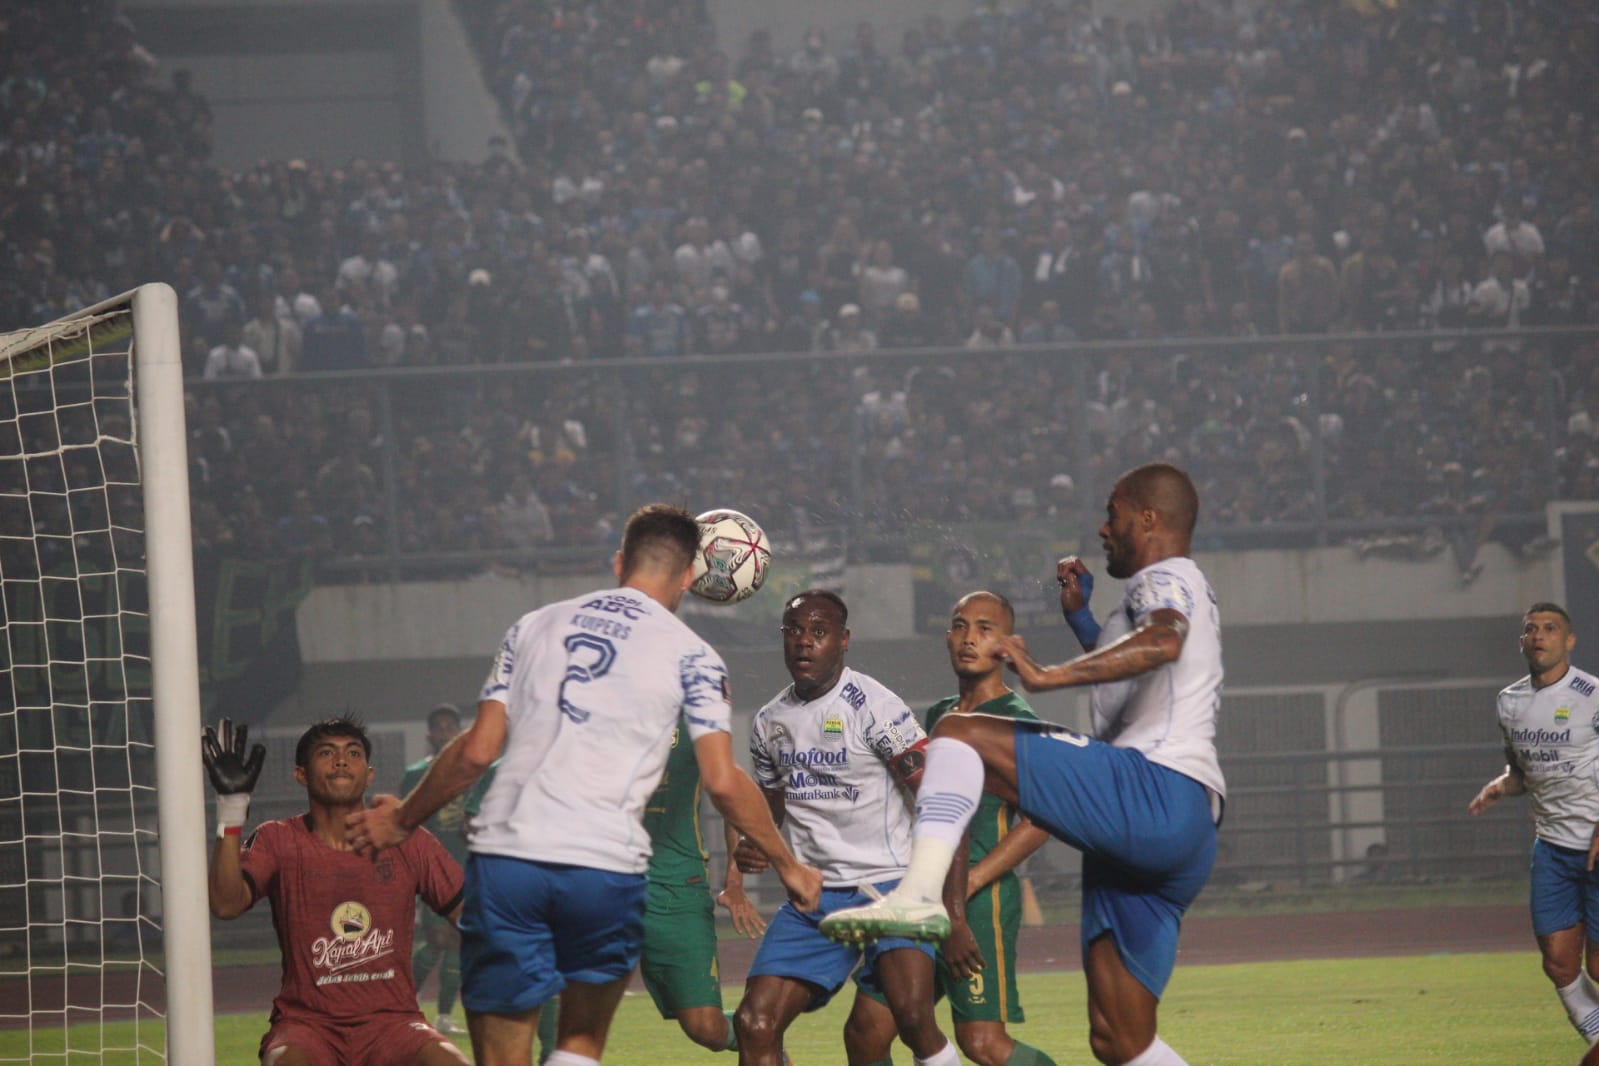 Kompetisi liga 1 Segera Dimulai, Persib Bandung Kekeuh Gunakan GBLA Sebagai Home Base Meski Belum Jelas.